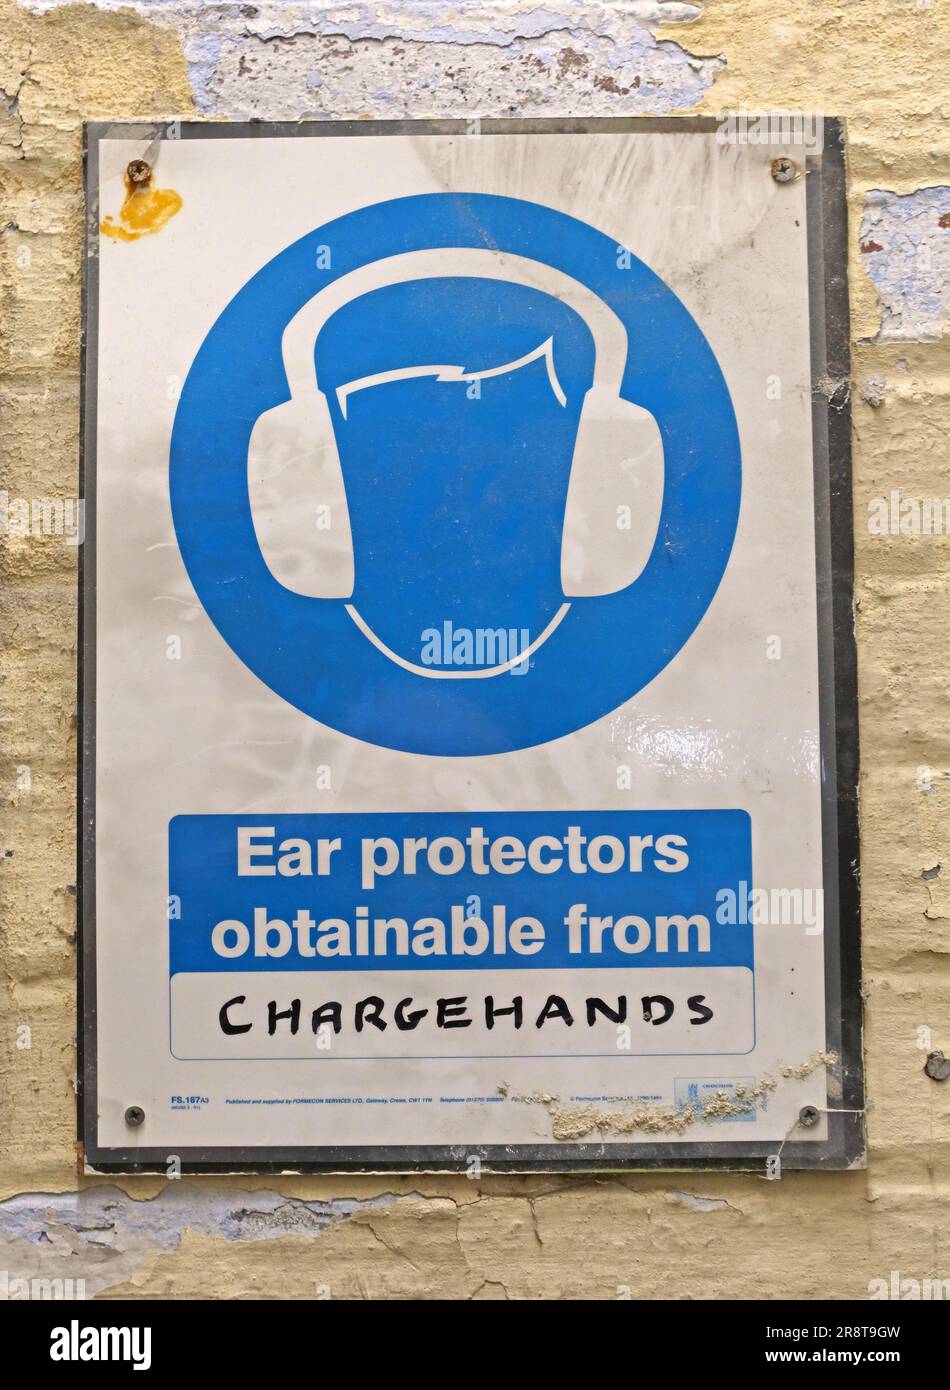 Portez des protections auditives et procurez-vous-les auprès de votre chargehand, signez à Leigh Spinners Mill, Park LN, Leigh, Wigan, Lancashire, ANGLETERRE, ROYAUME-UNI, WN7 2LB Banque D'Images